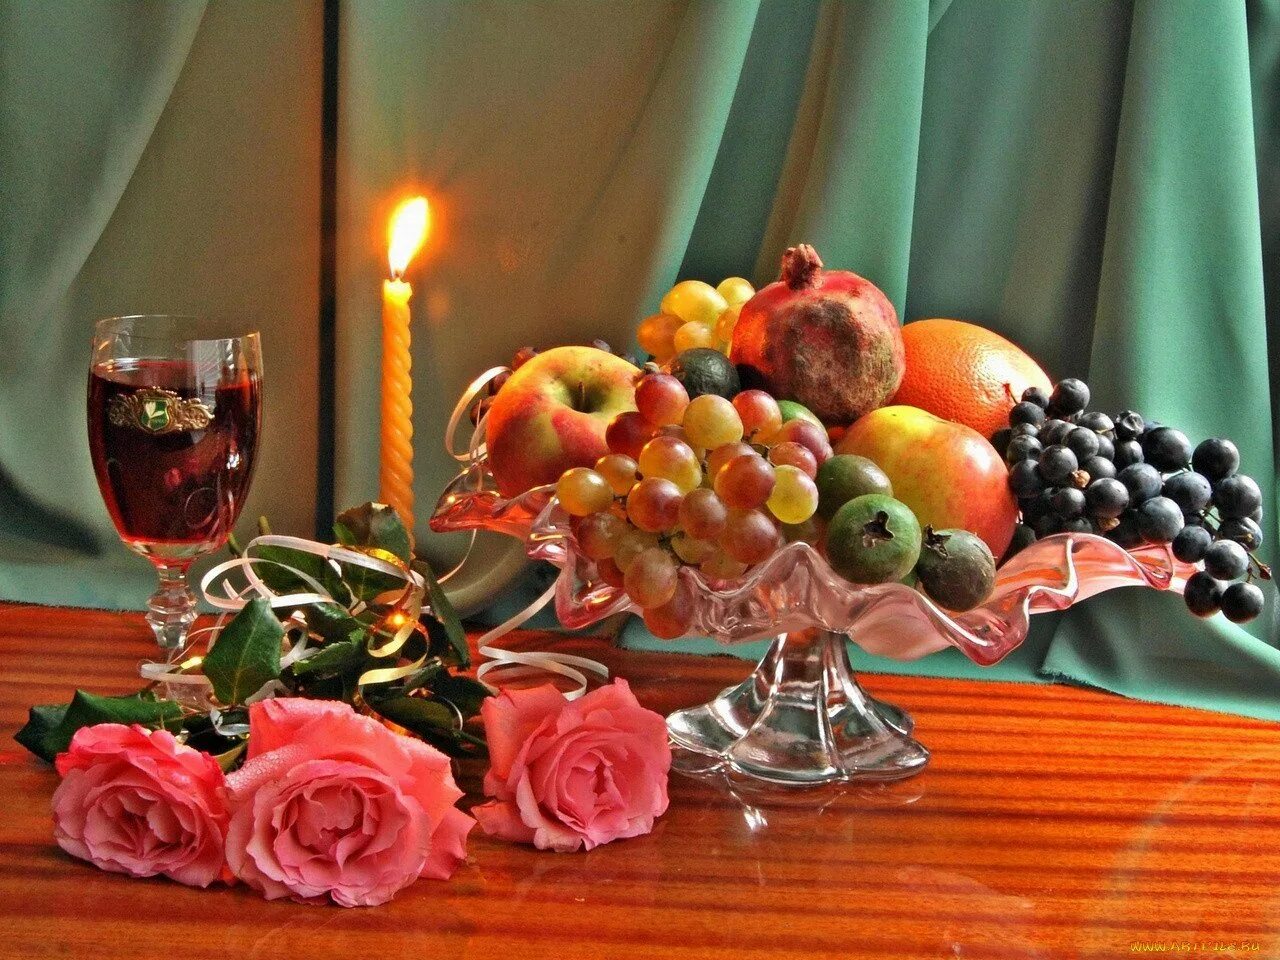 Светлый вечер добрый вечер. Натюрморт добрый вечер. Натюрморт с вином и фруктами. Фрукты в вазе на столе. Натюрморт с фруктами вином и свечами.